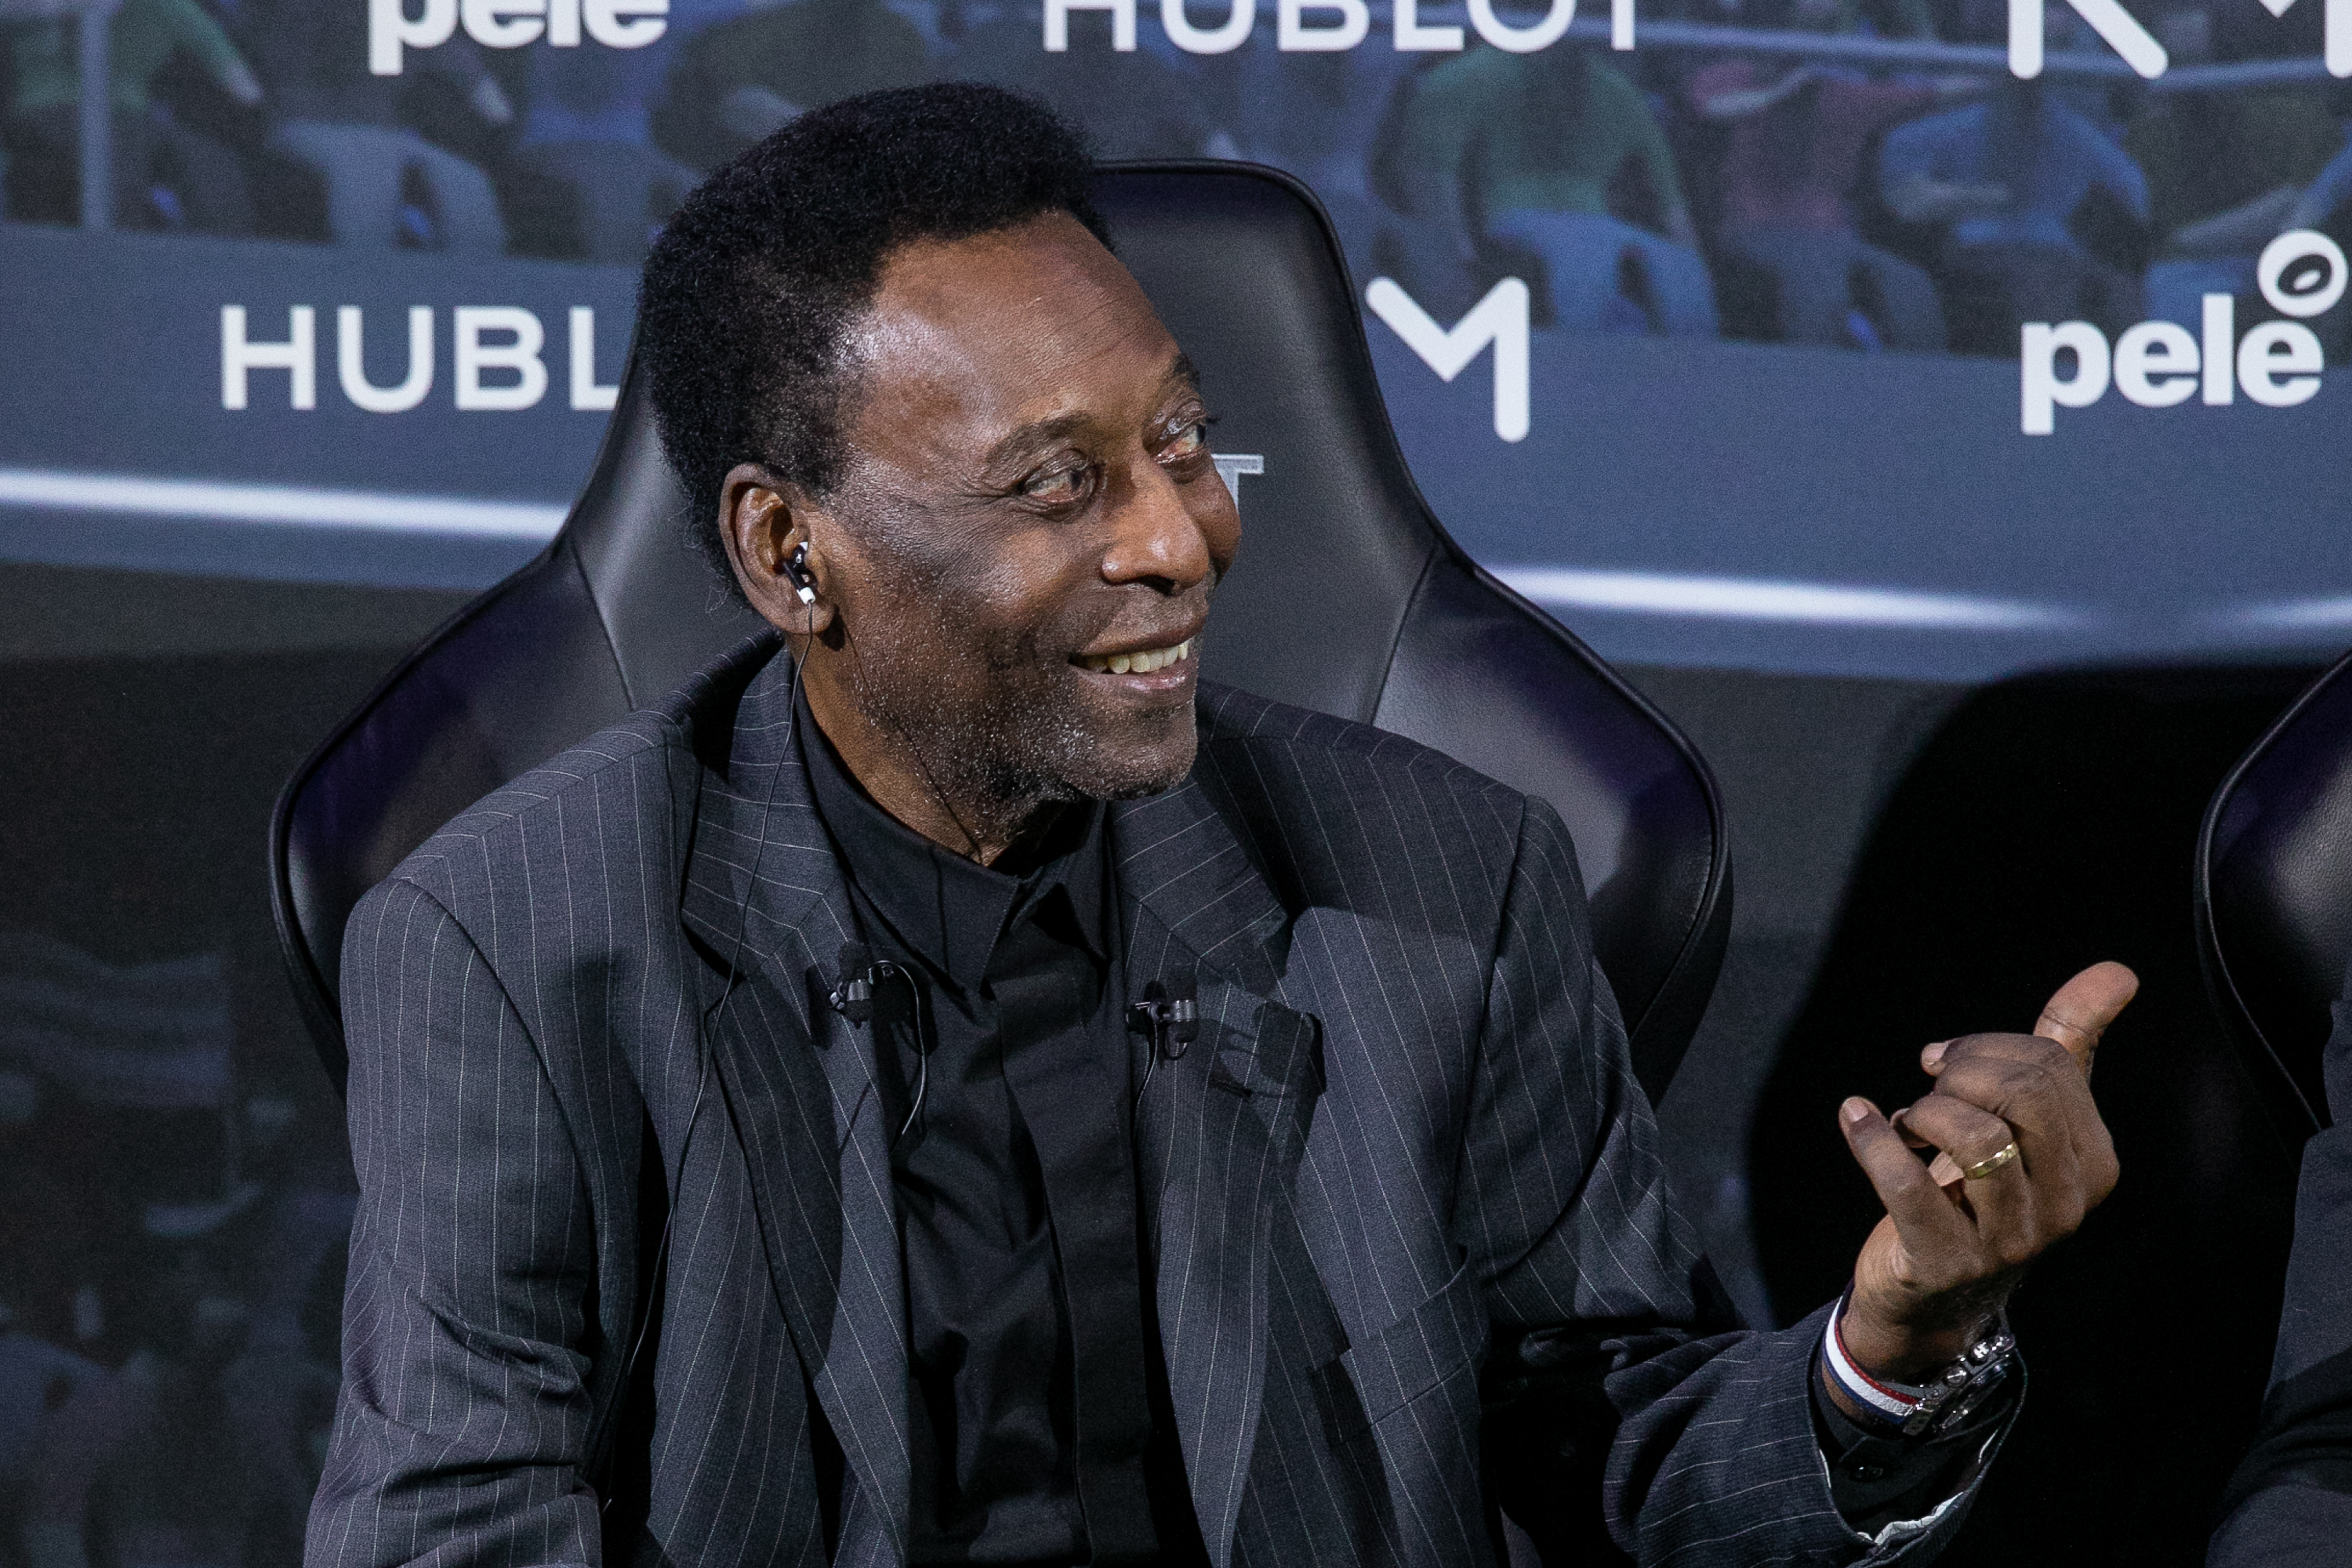 ¡Pelé fue hospitalizado luego de su encuentro con Mbappé!